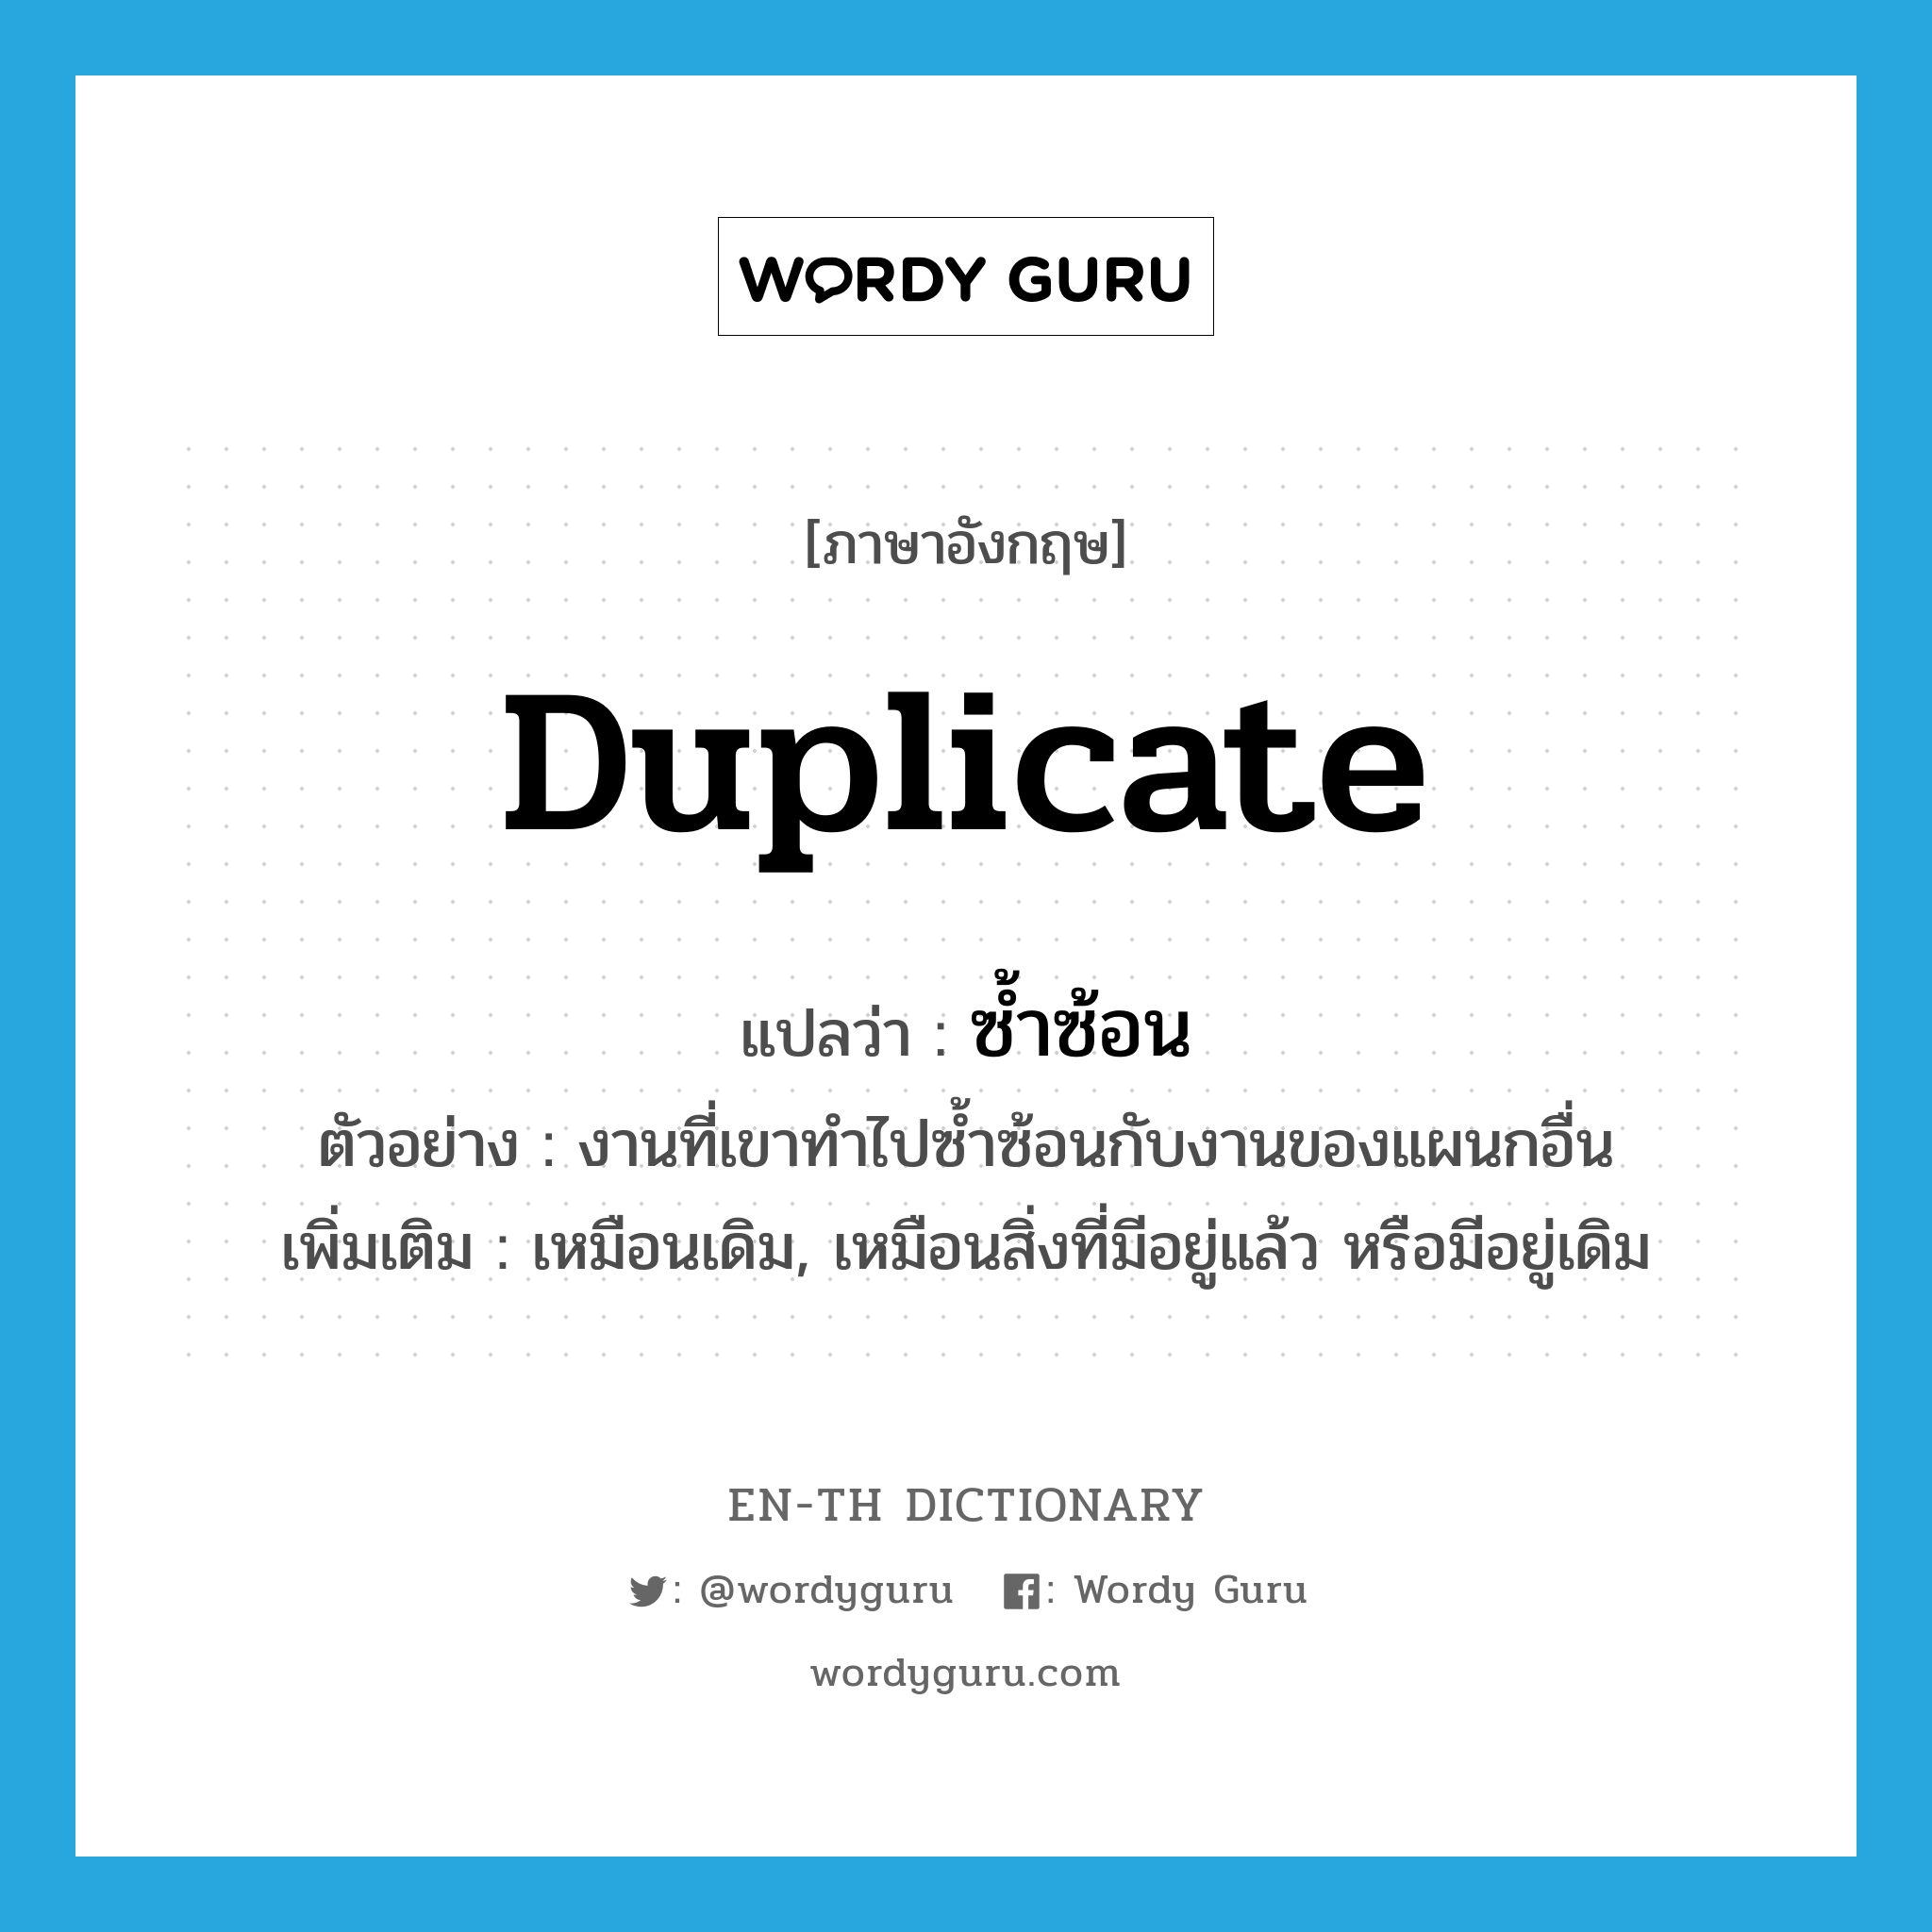 duplicate แปลว่า?, คำศัพท์ภาษาอังกฤษ duplicate แปลว่า ซ้ำซ้อน ประเภท V ตัวอย่าง งานที่เขาทำไปซ้ำซ้อนกับงานของแผนกอื่น เพิ่มเติม เหมือนเดิม, เหมือนสิ่งที่มีอยู่แล้ว หรือมีอยู่เดิม หมวด V